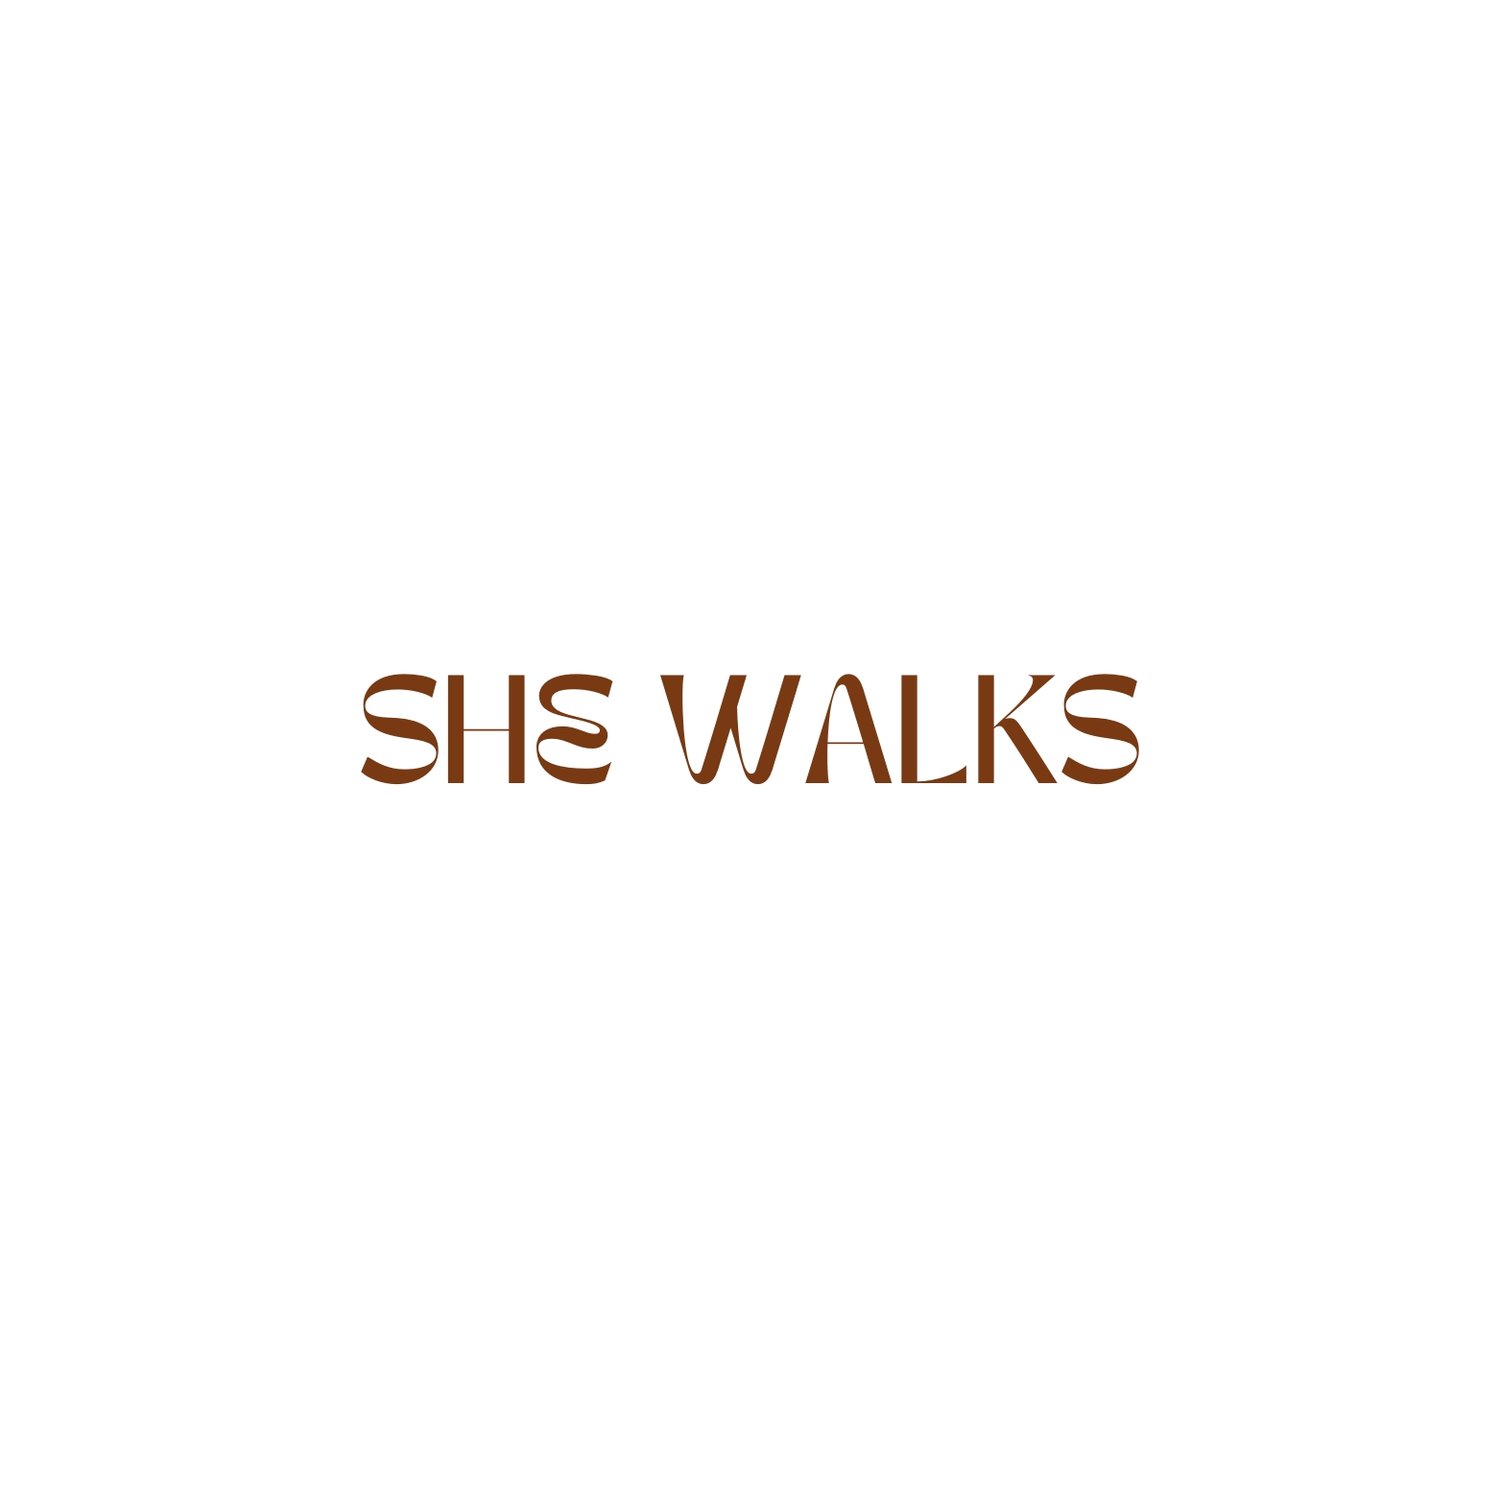 She Walks - Women&#39;s Walking Community in New Zealand